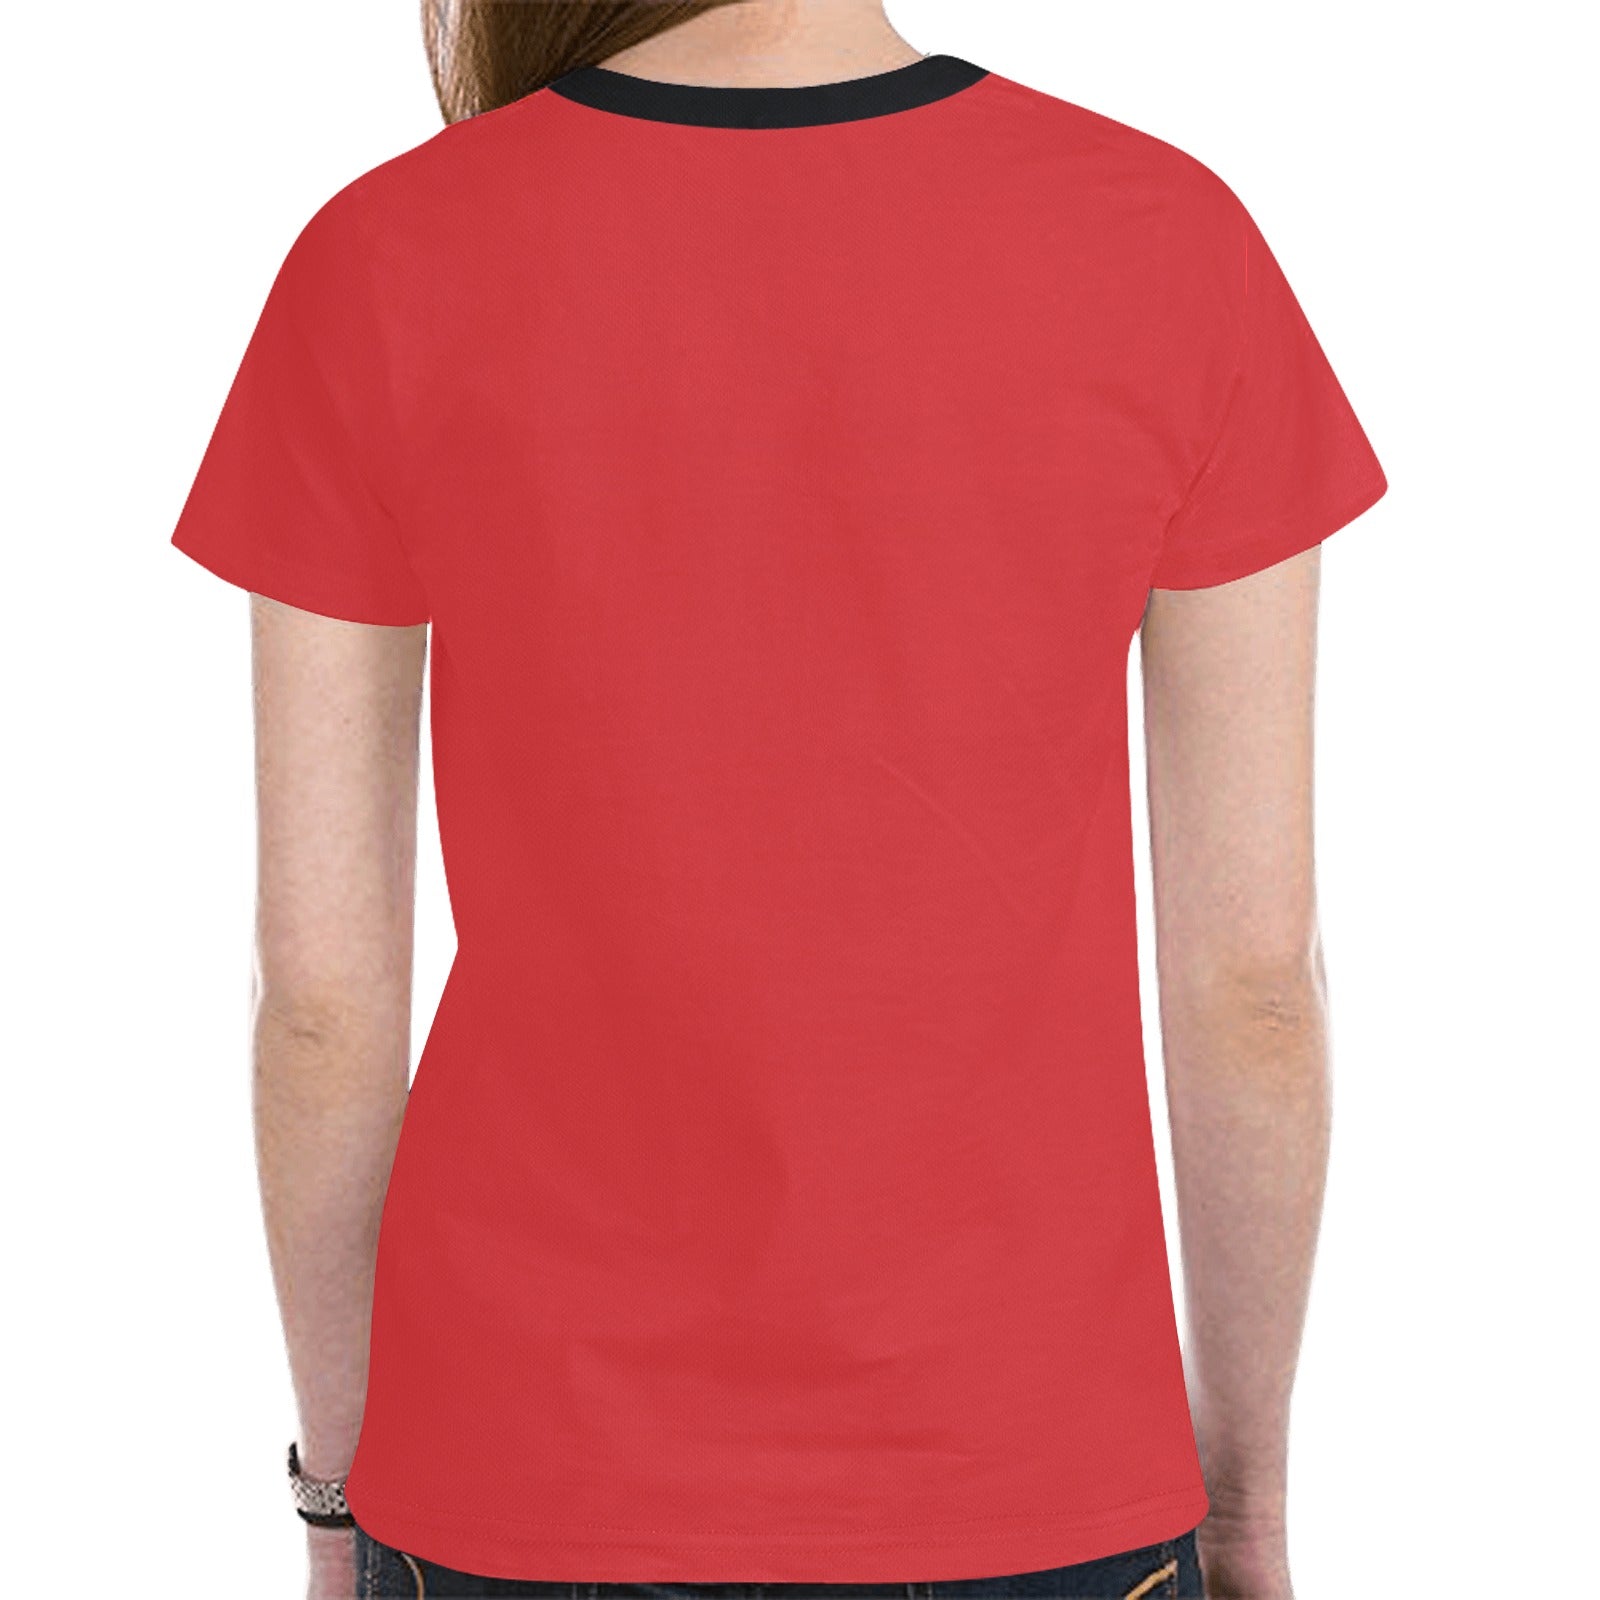 Buffalo Spirit Guide (Red) T-shirt for Women